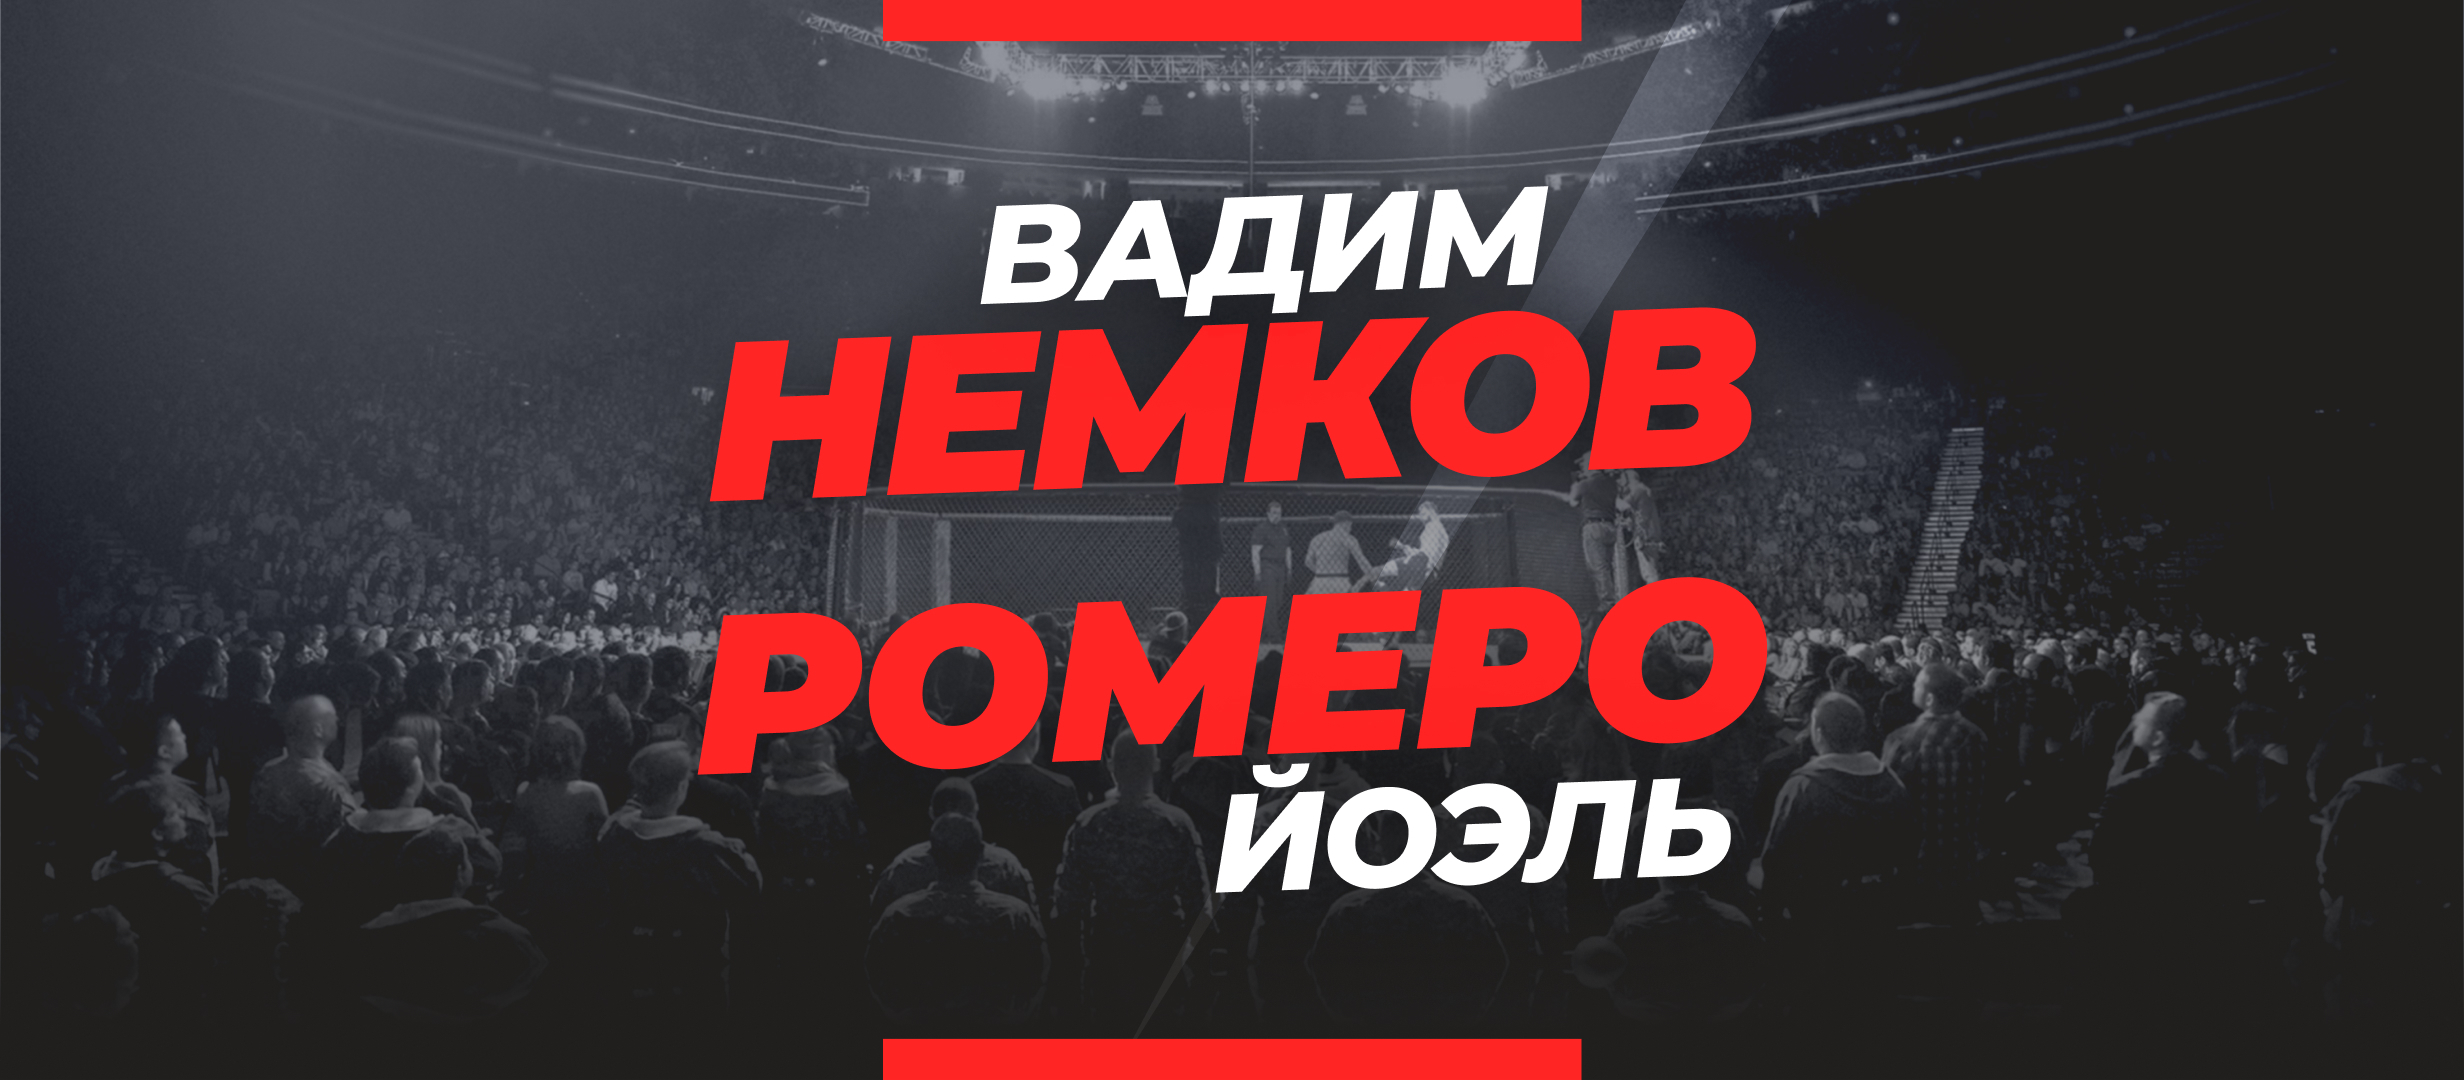 Немков — Ромеро: прогноз и коэффициенты на бой